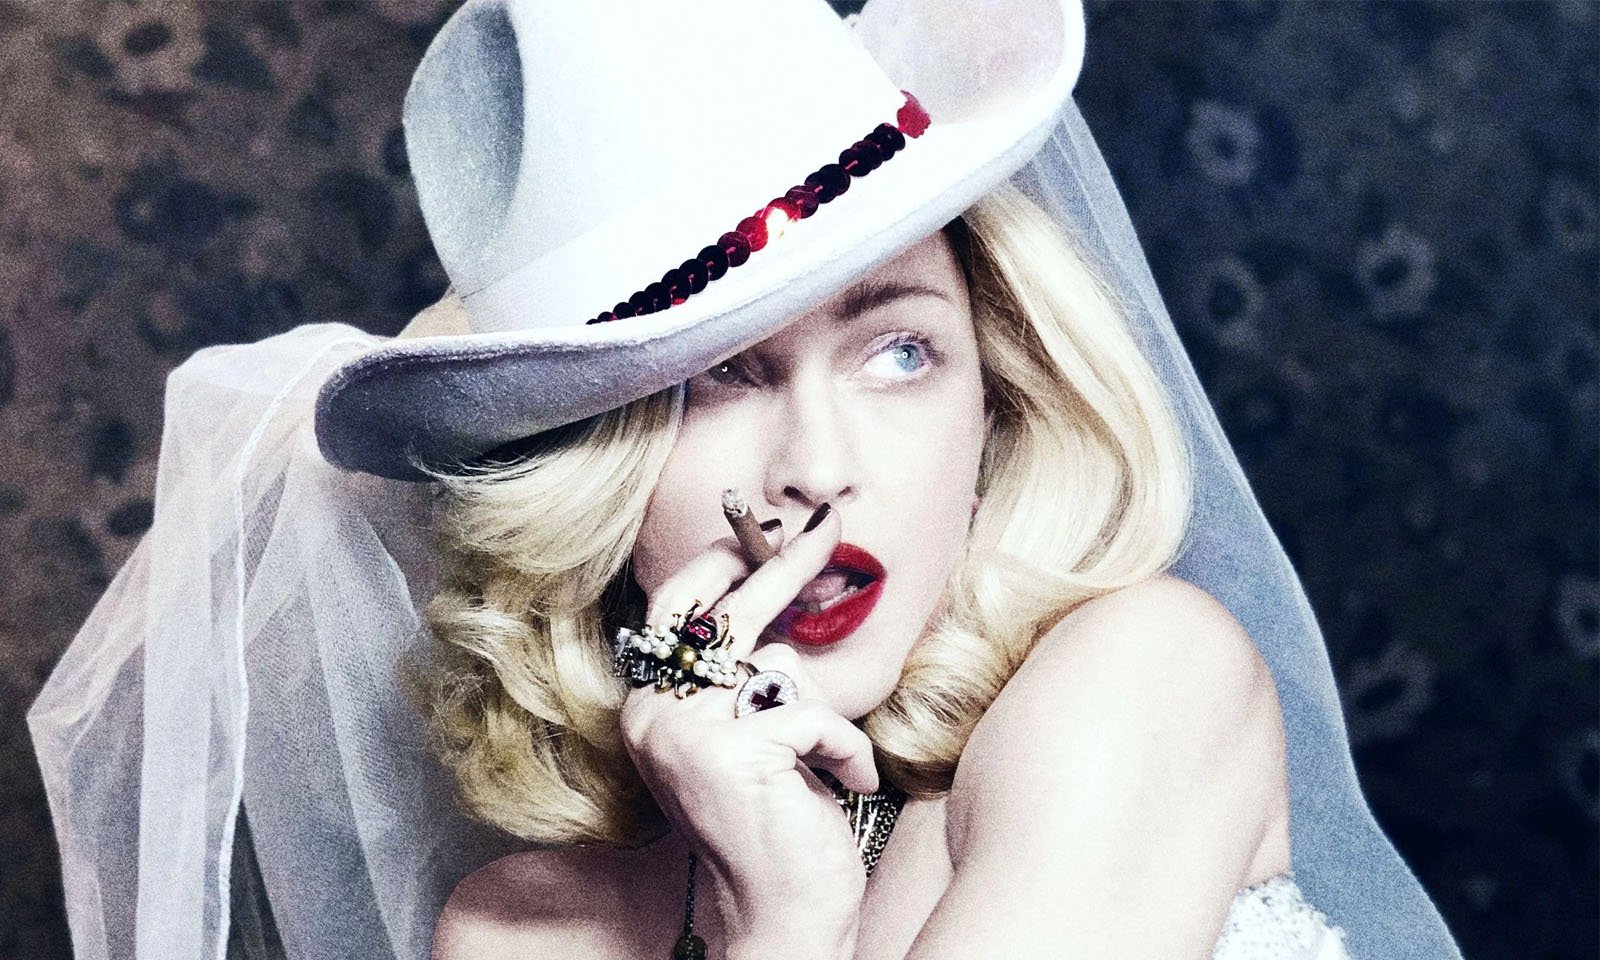 Madonna vai dirigir e coescrever filme sobre sua própria vida: “O Foco sempre sera a música”